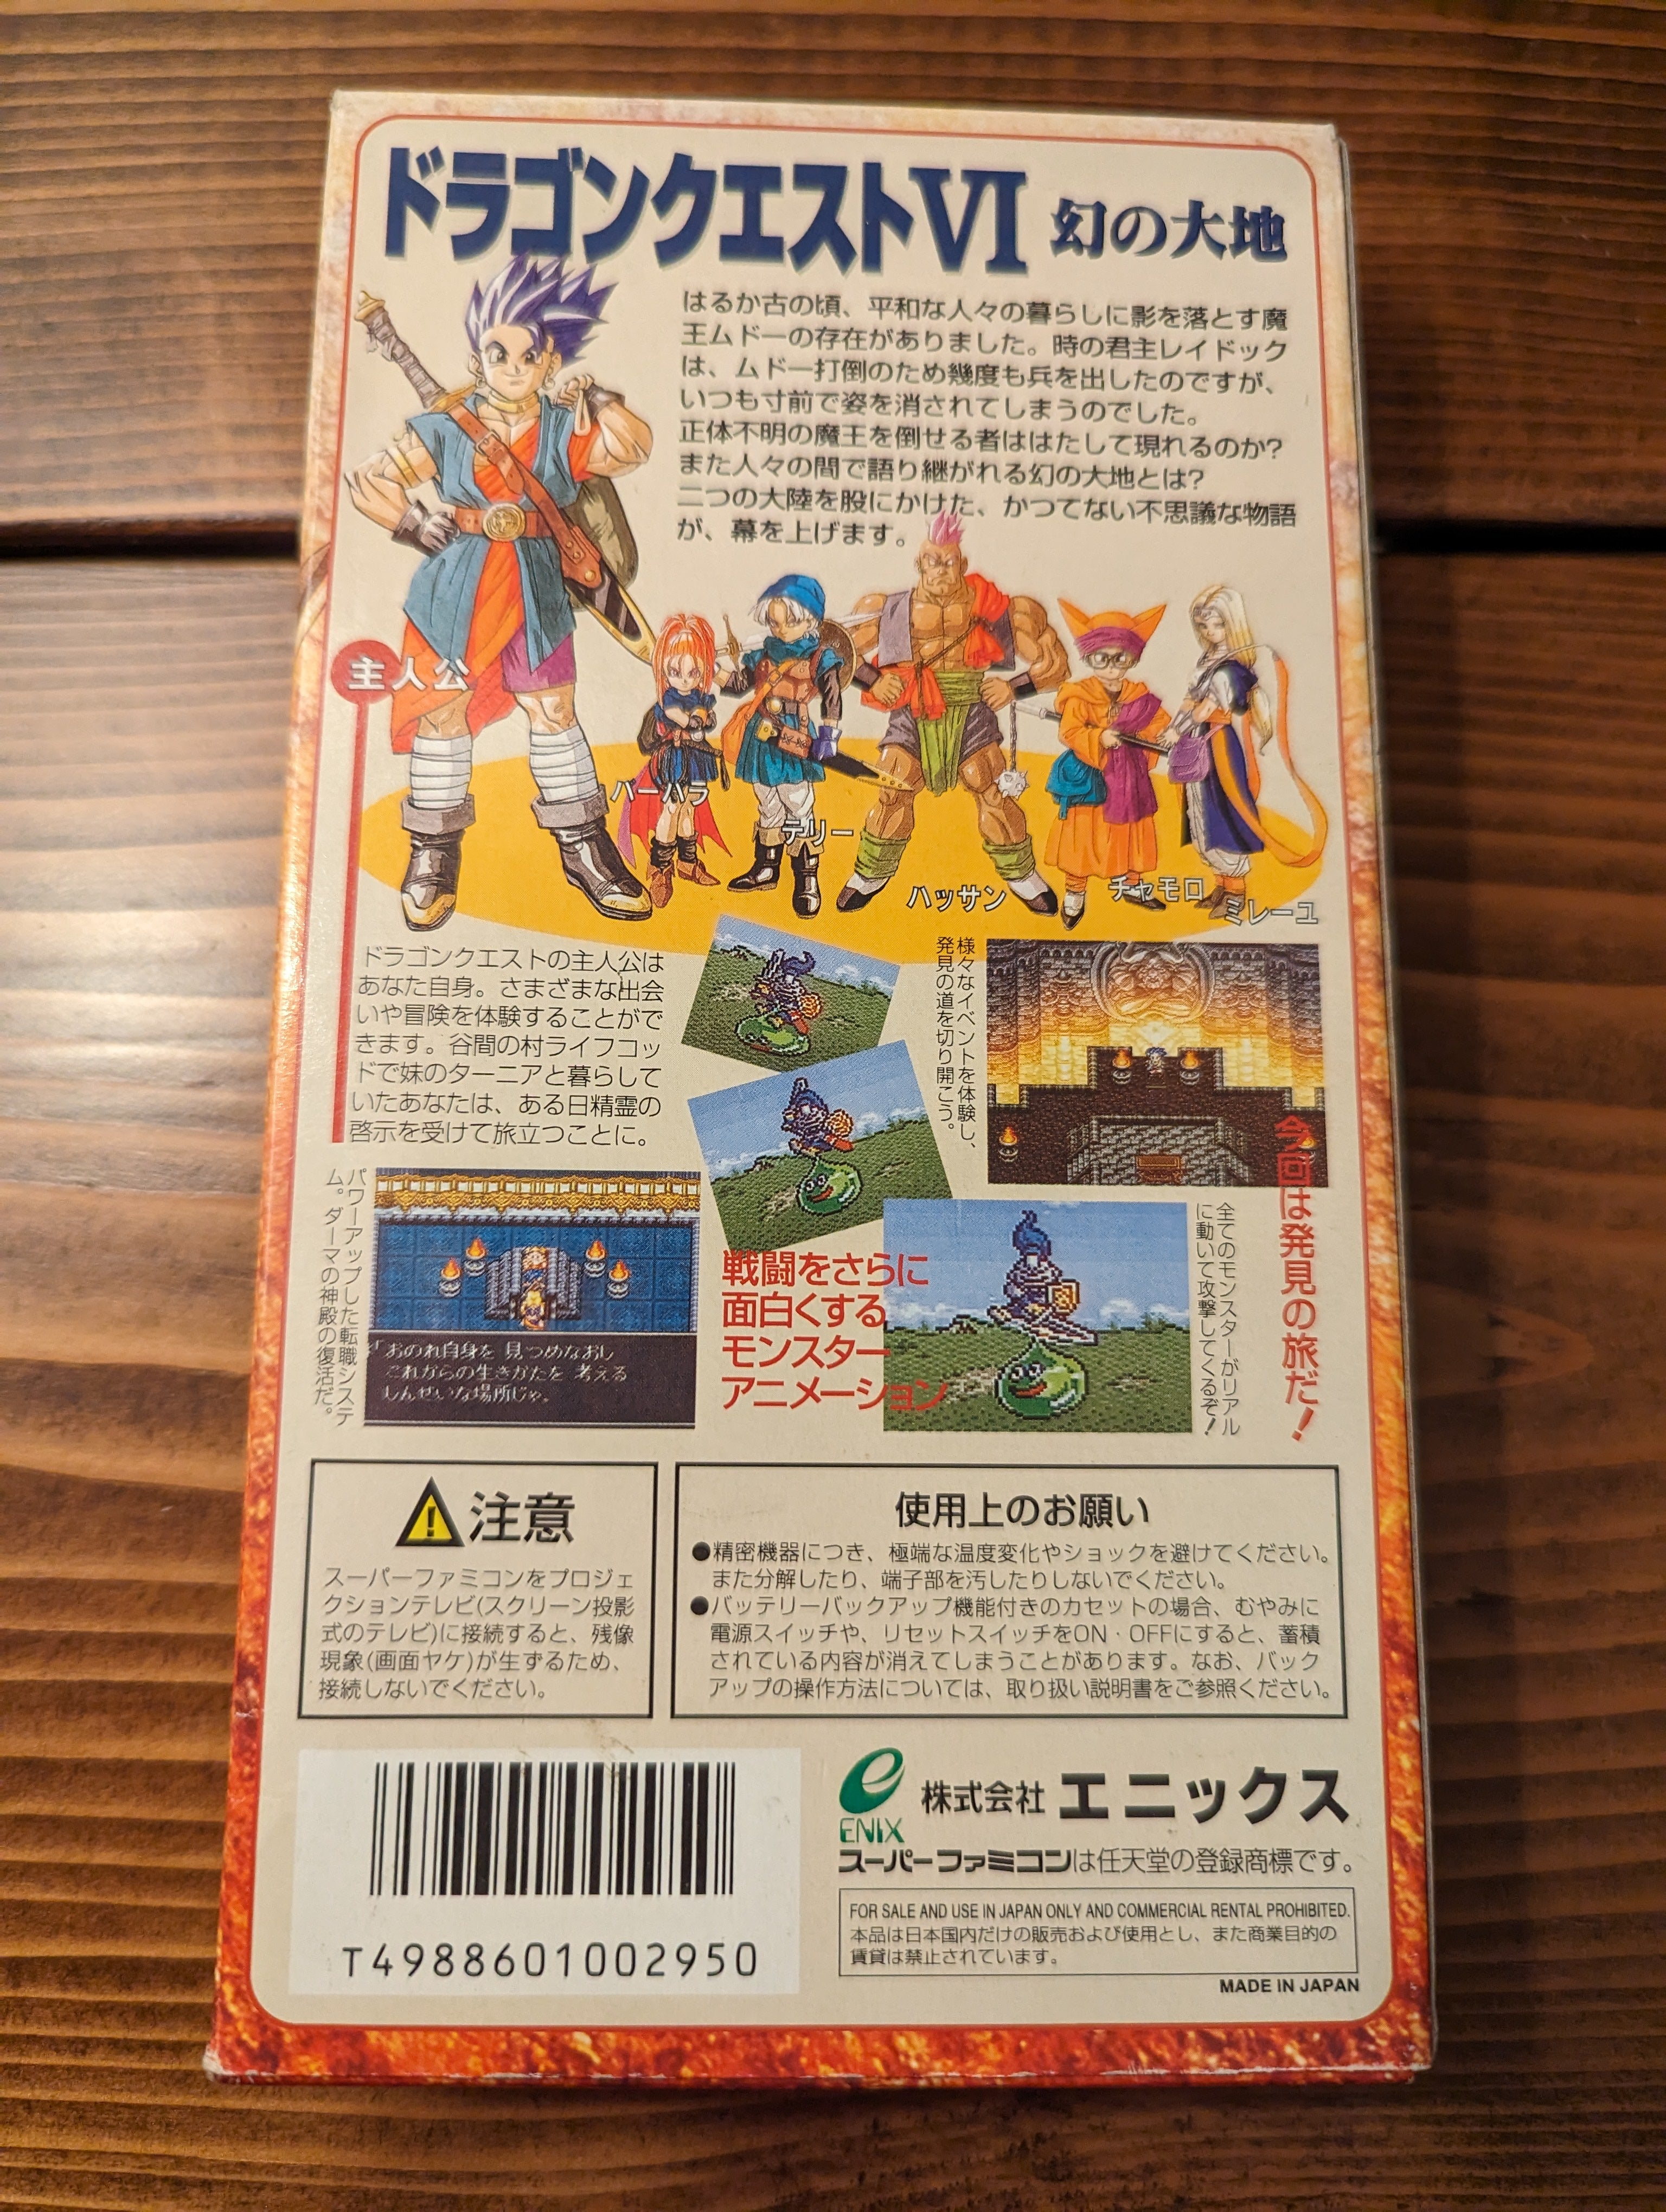 Dragon Quest 6 VI - Super Famicom - Complete